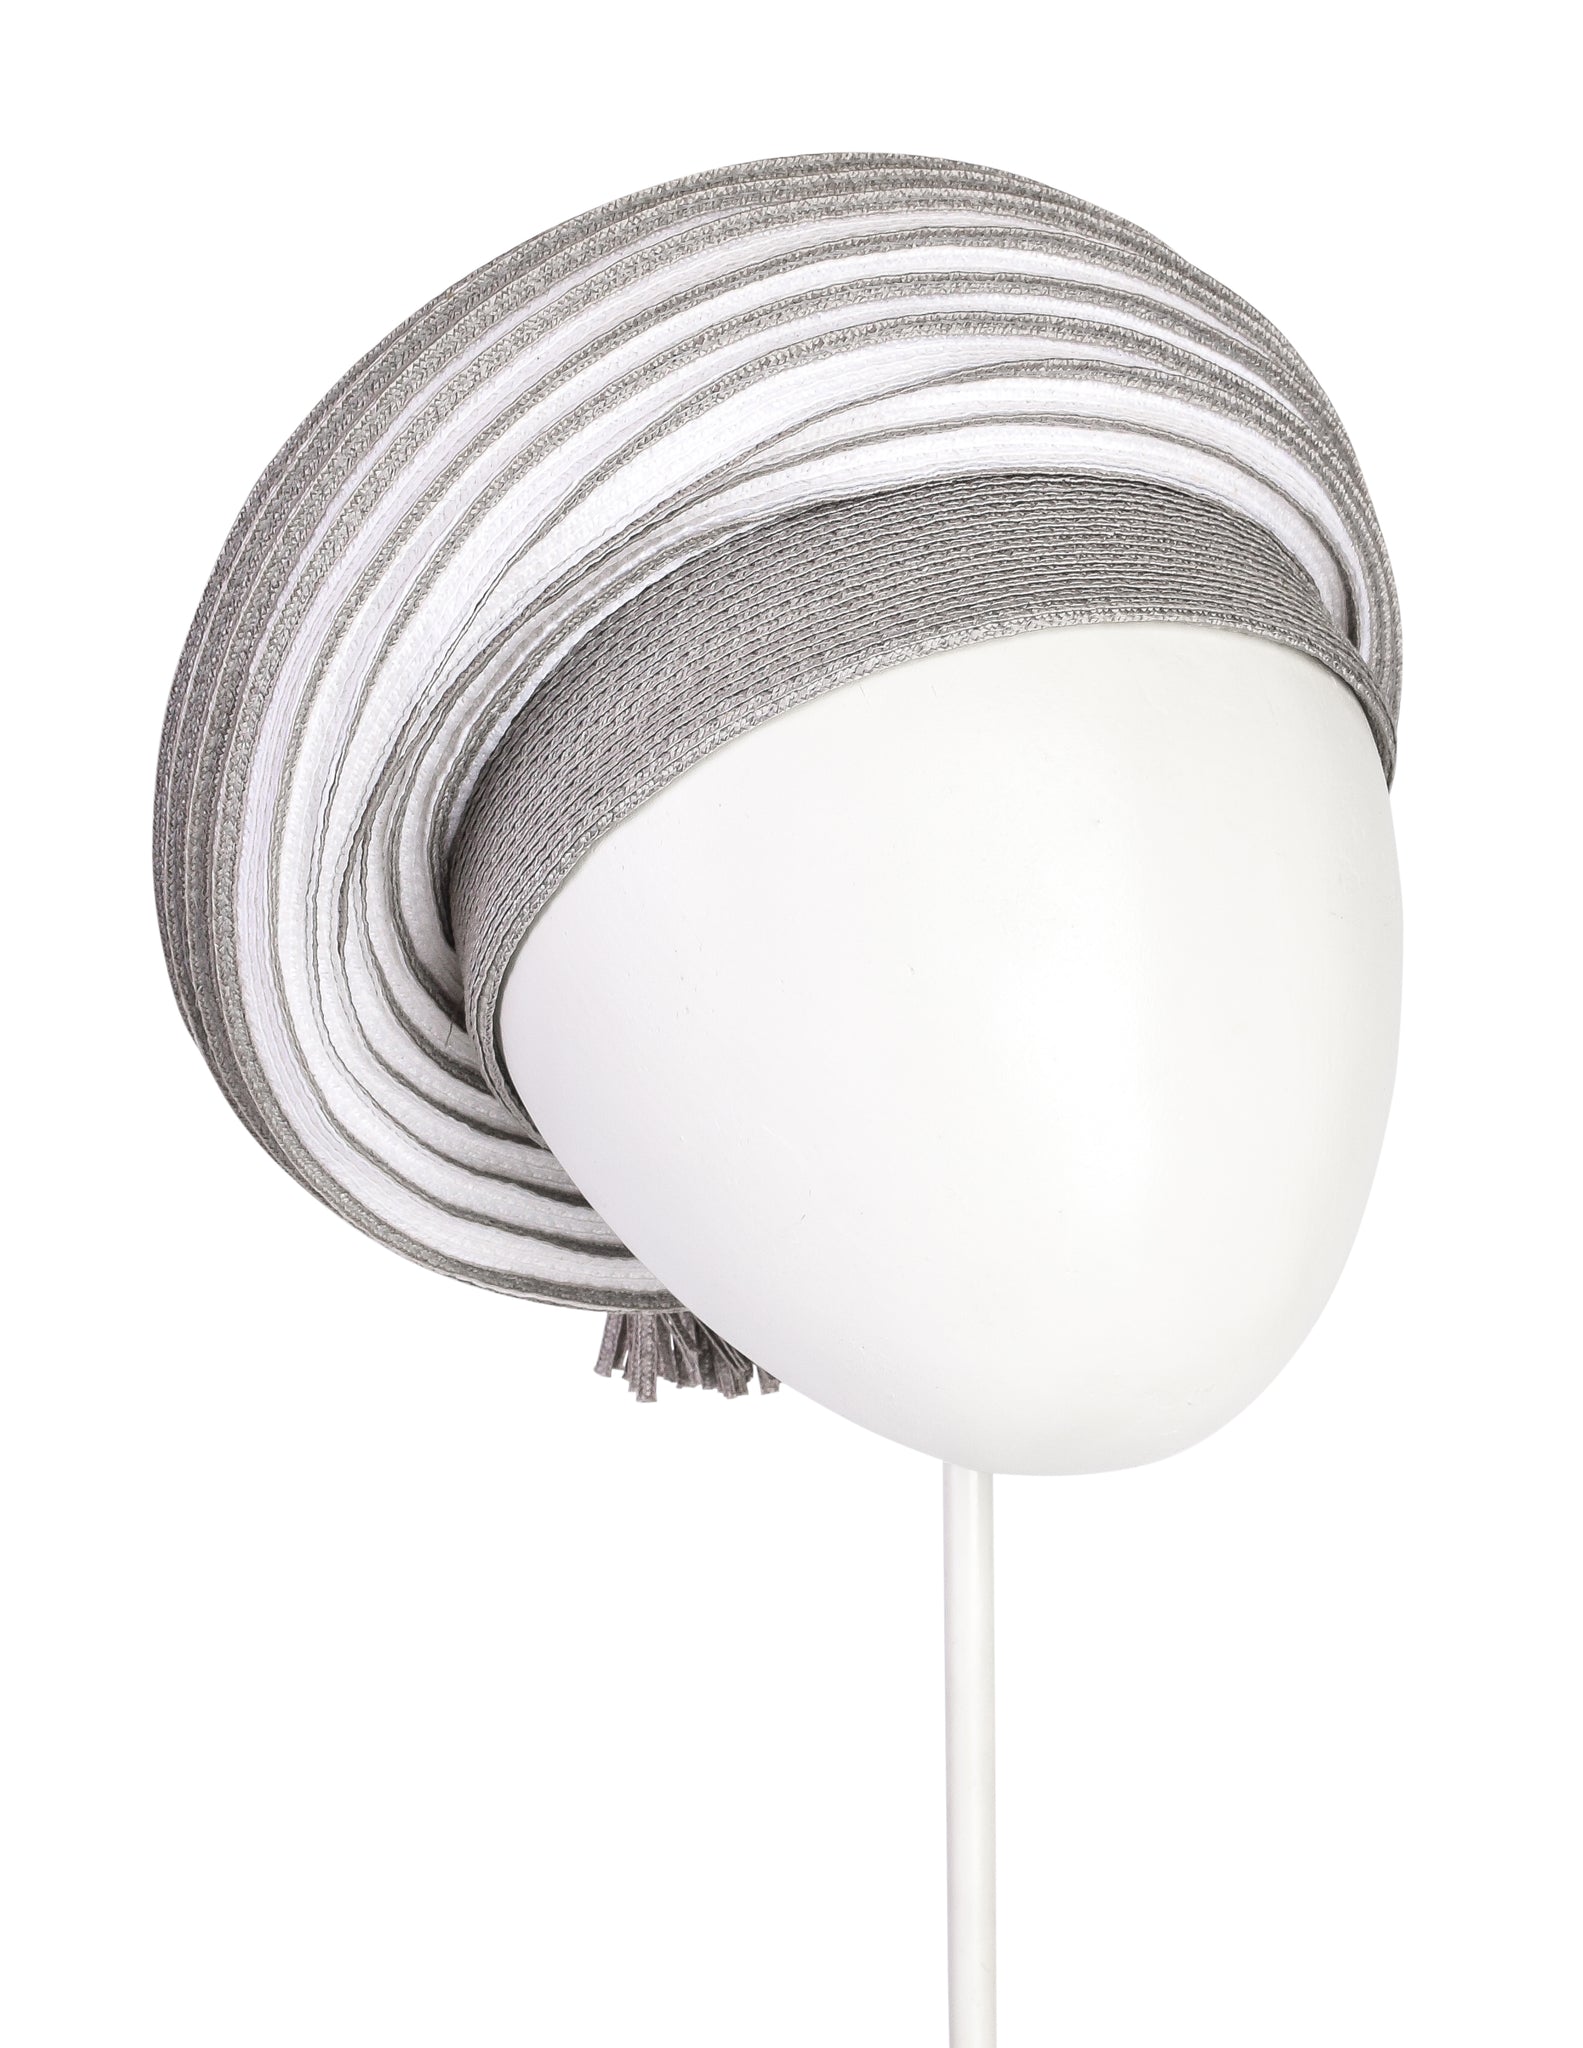 Christian Dior Vintage 1960s White Grey Straw Tassel Hat